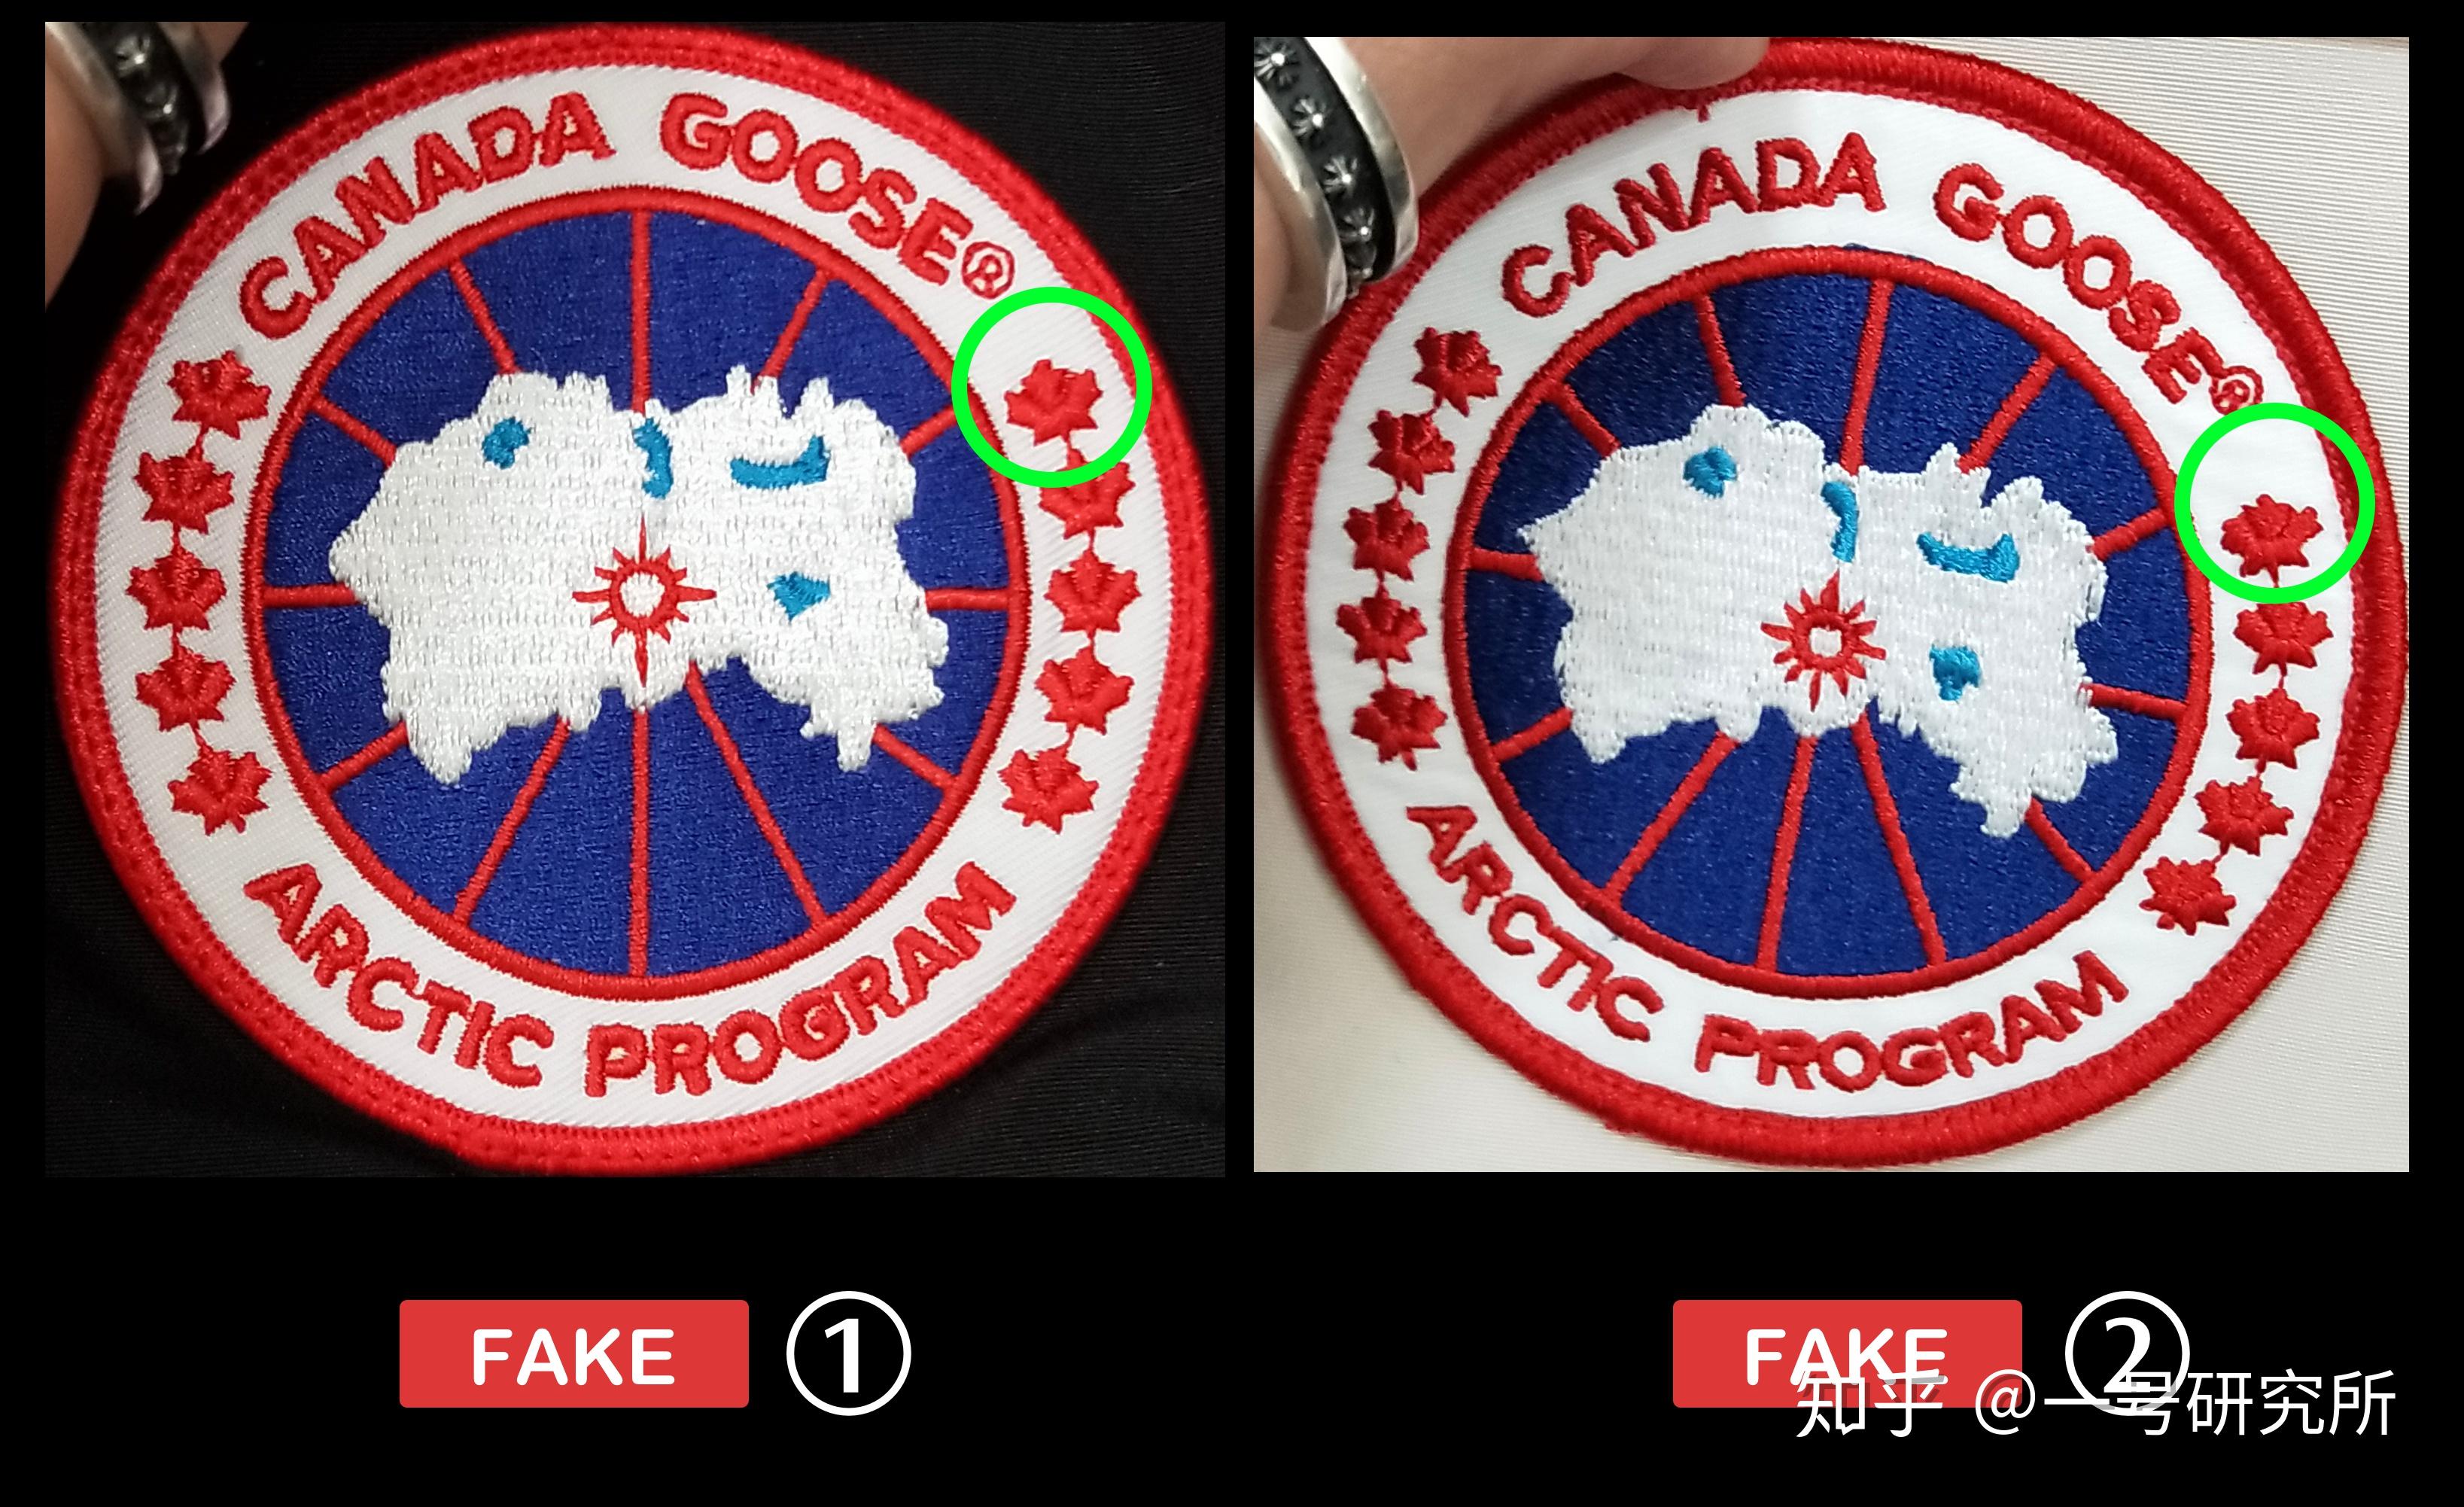 加拿大鹅标志真假对比图片